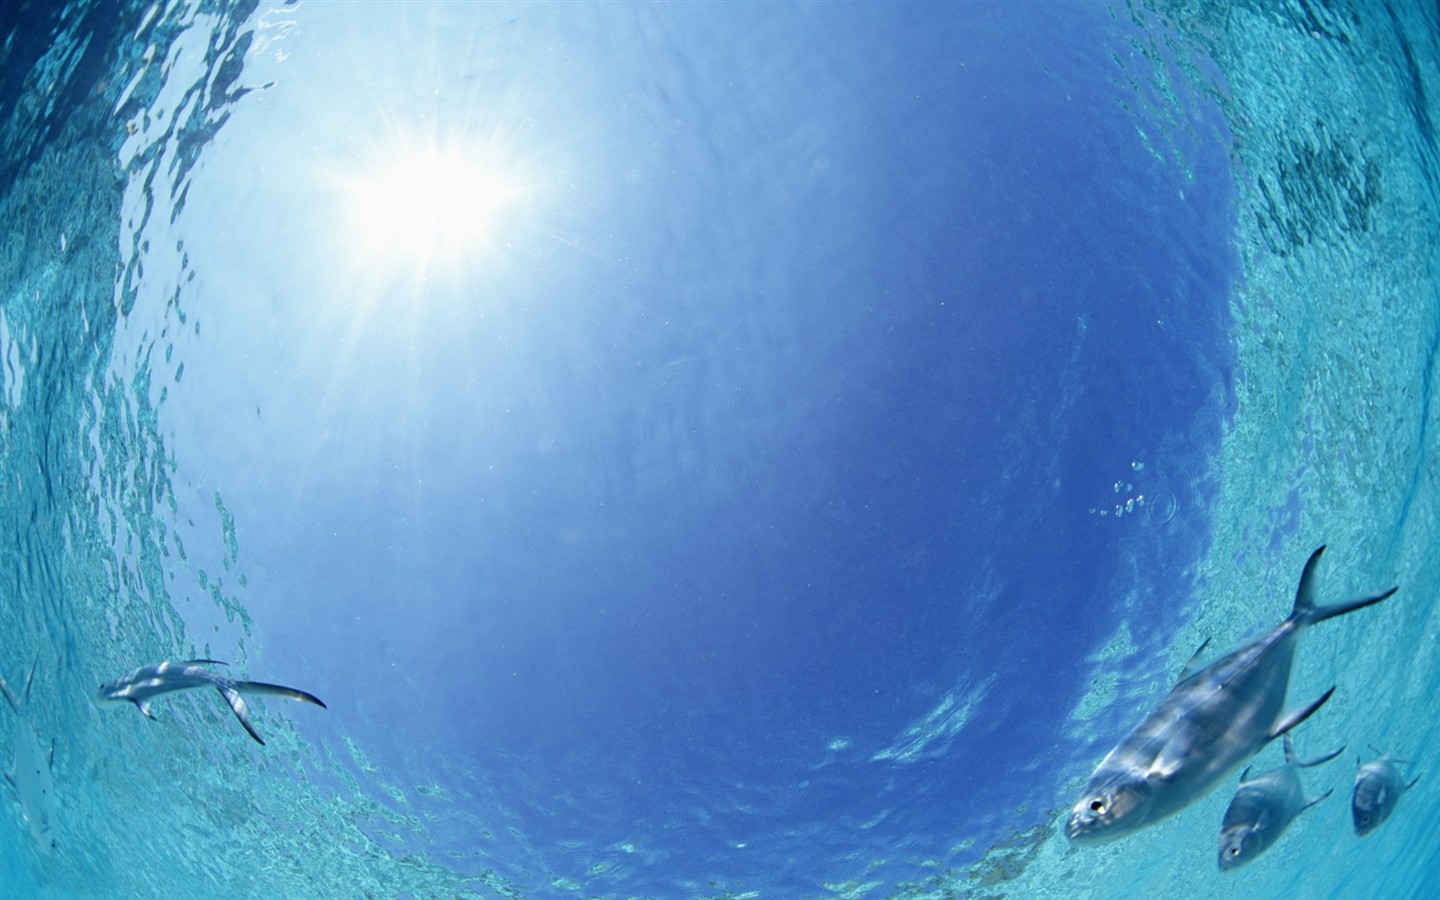 Maledivy vody a modrou oblohu #28 - 1440x900